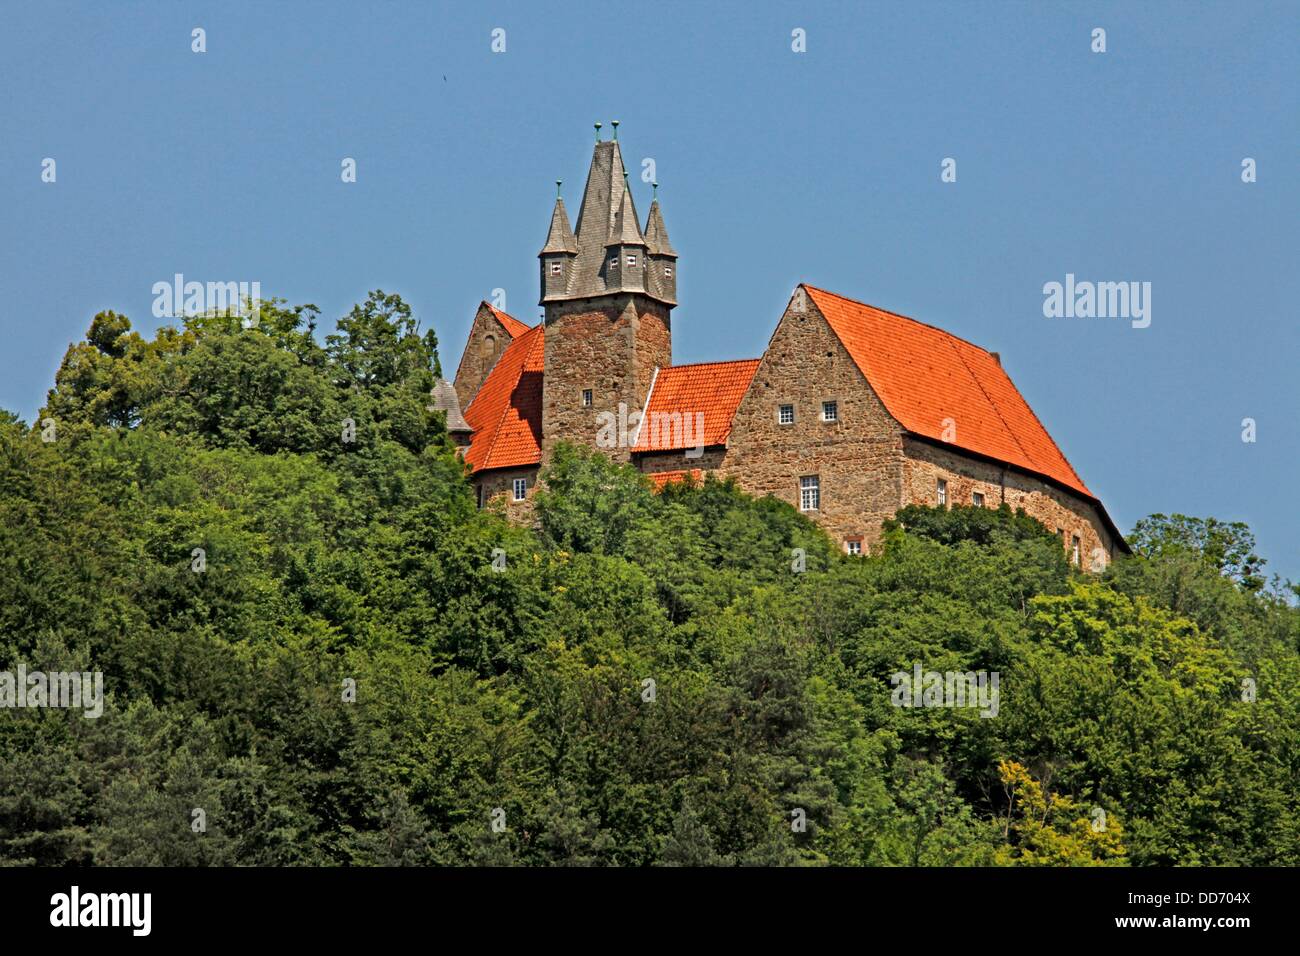 Schloss Spangenberg, Spangenberg, Bezirk Schwalm-Eder, Hessen, Deutschland die Stadt Spangenberg am besten von allen für seine Schloss Spangenberg, ein Schloss, gebaut im Jahre 1253 und Wahrzeichen der Stadt bekannt ist. Stockfoto